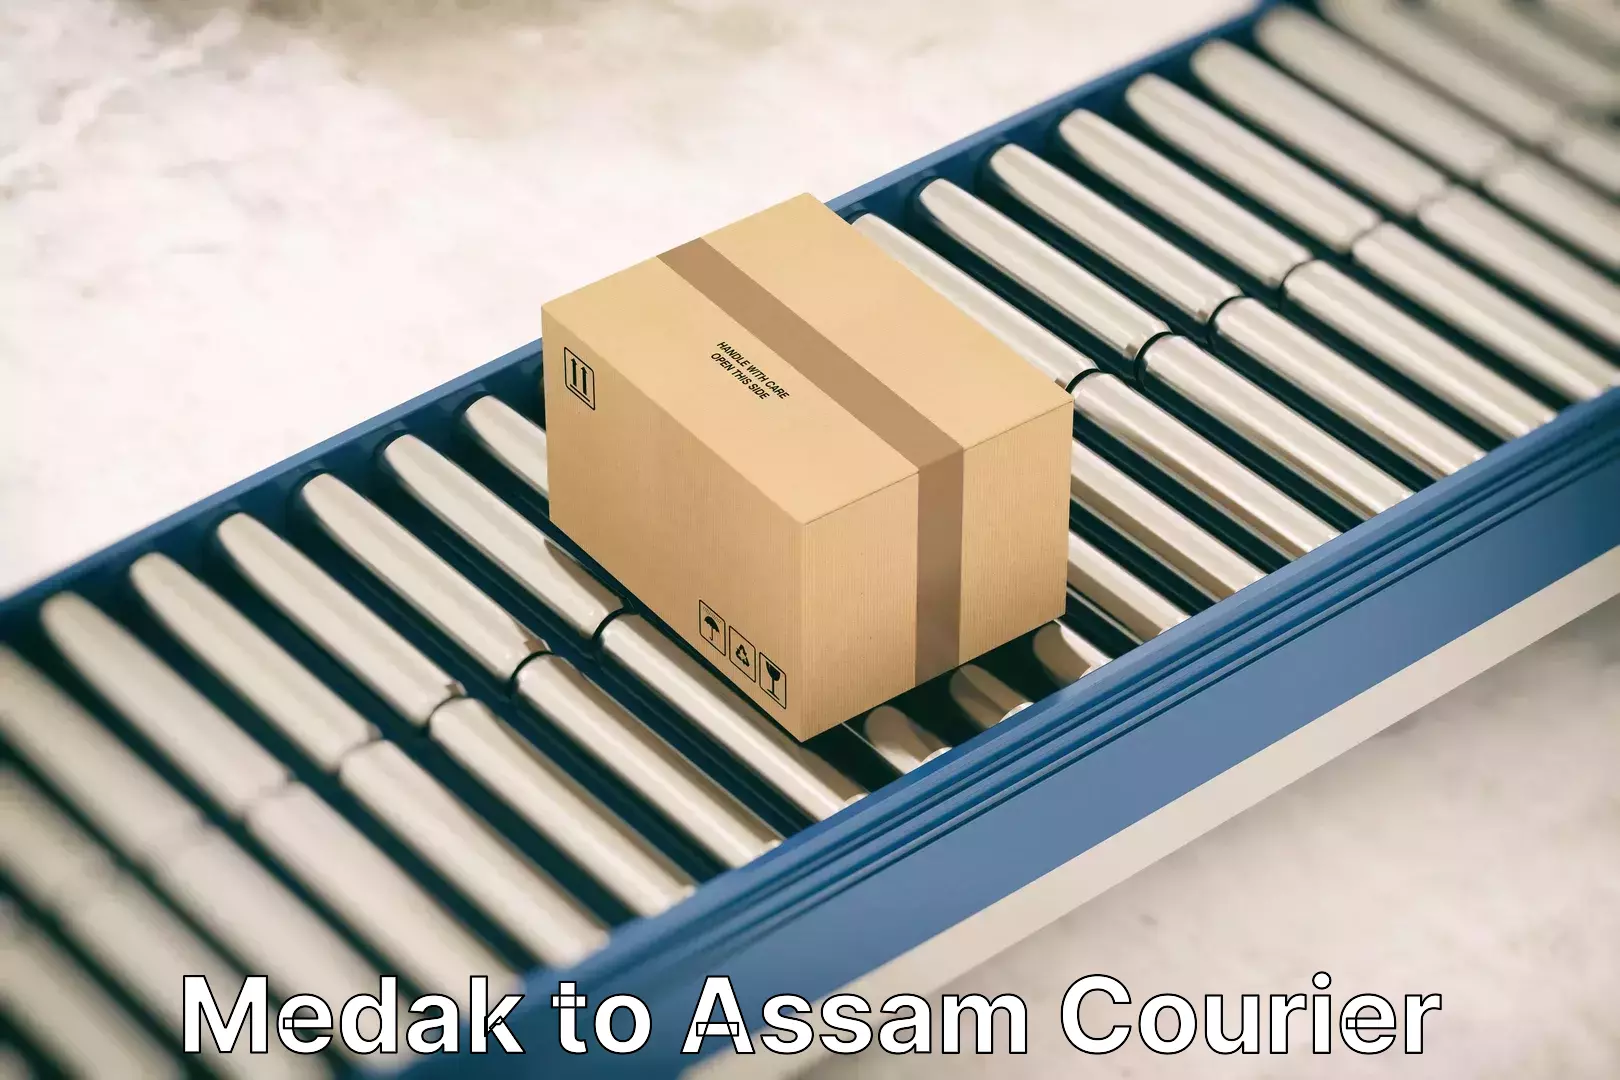 Household moving experts Medak to Assam